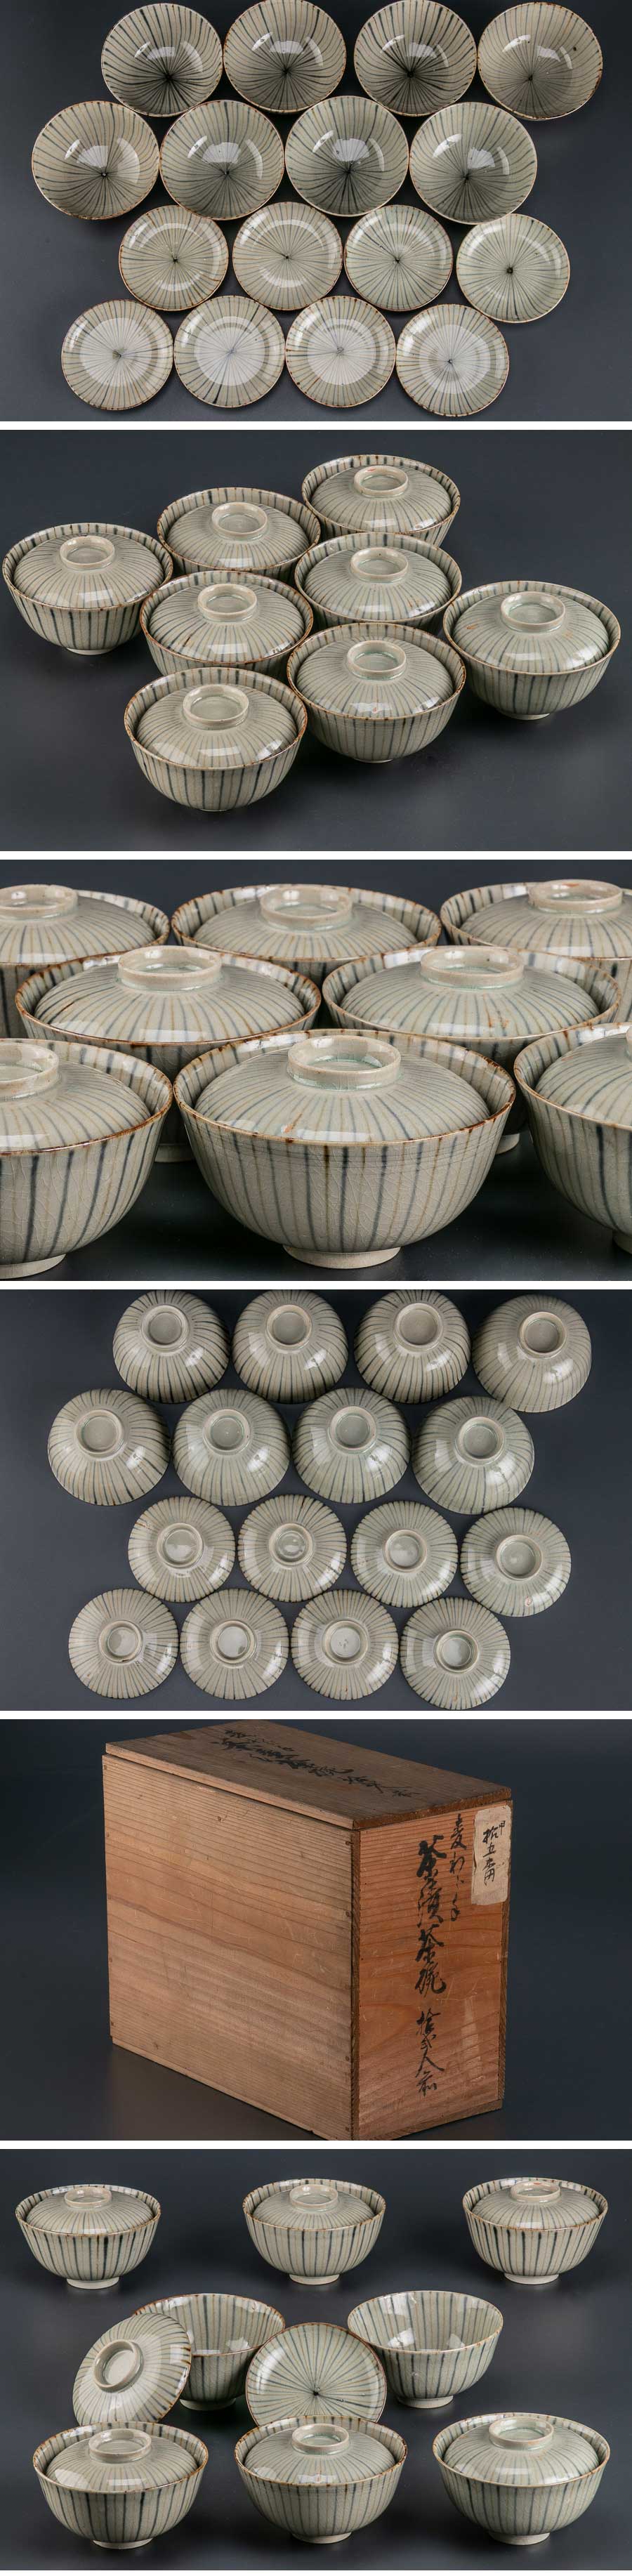 日本製在庫『 麦藁手蓋茶碗 8客 箱付 8920 』 8個組 料亭 日本料理 懐石 会席 和食器 煮物碗 作家物 鉢